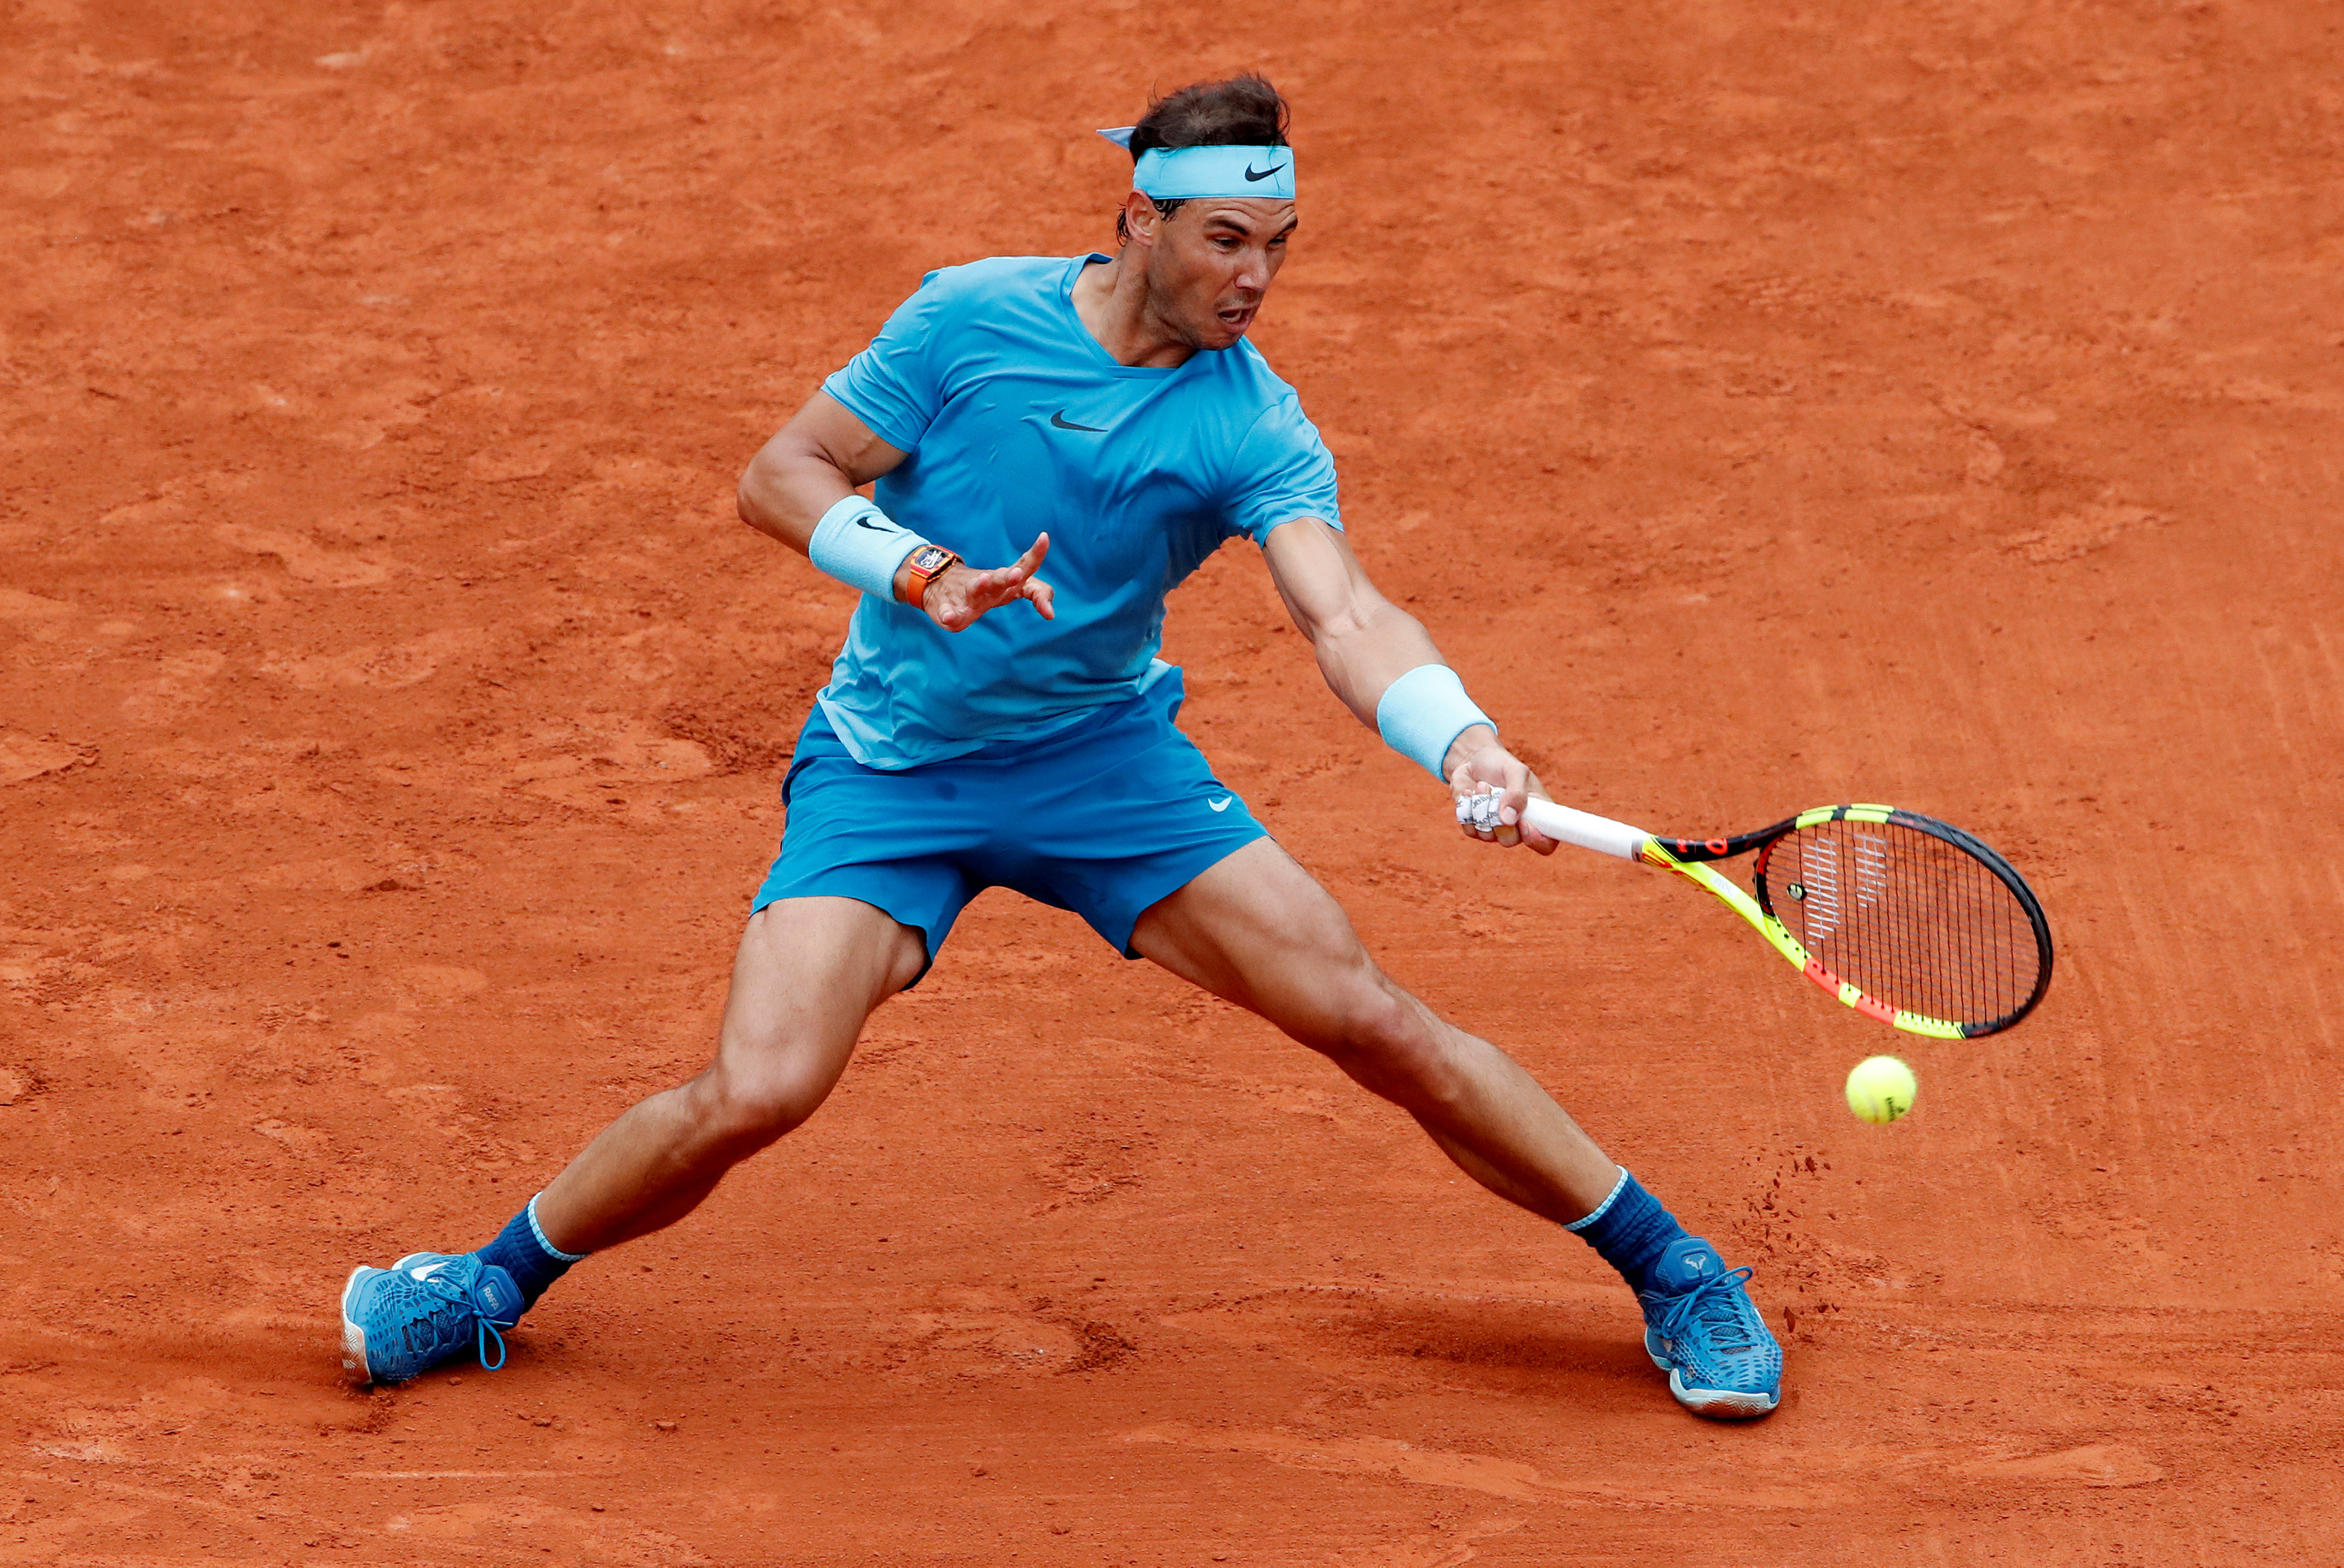 French Open: Nadal overcomes aggressive Bolelli